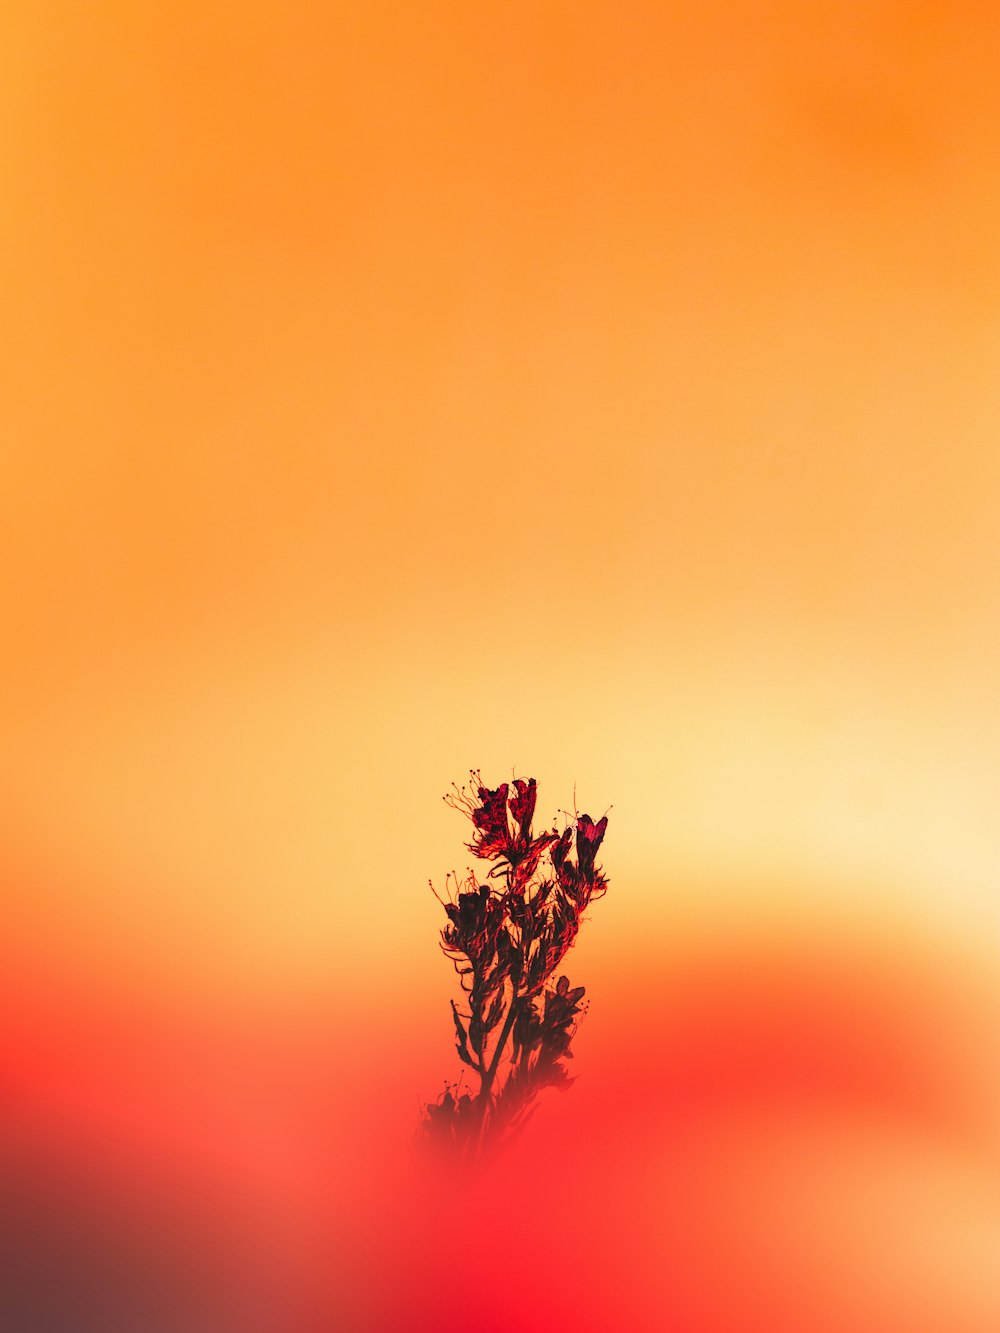 red flower in orange background